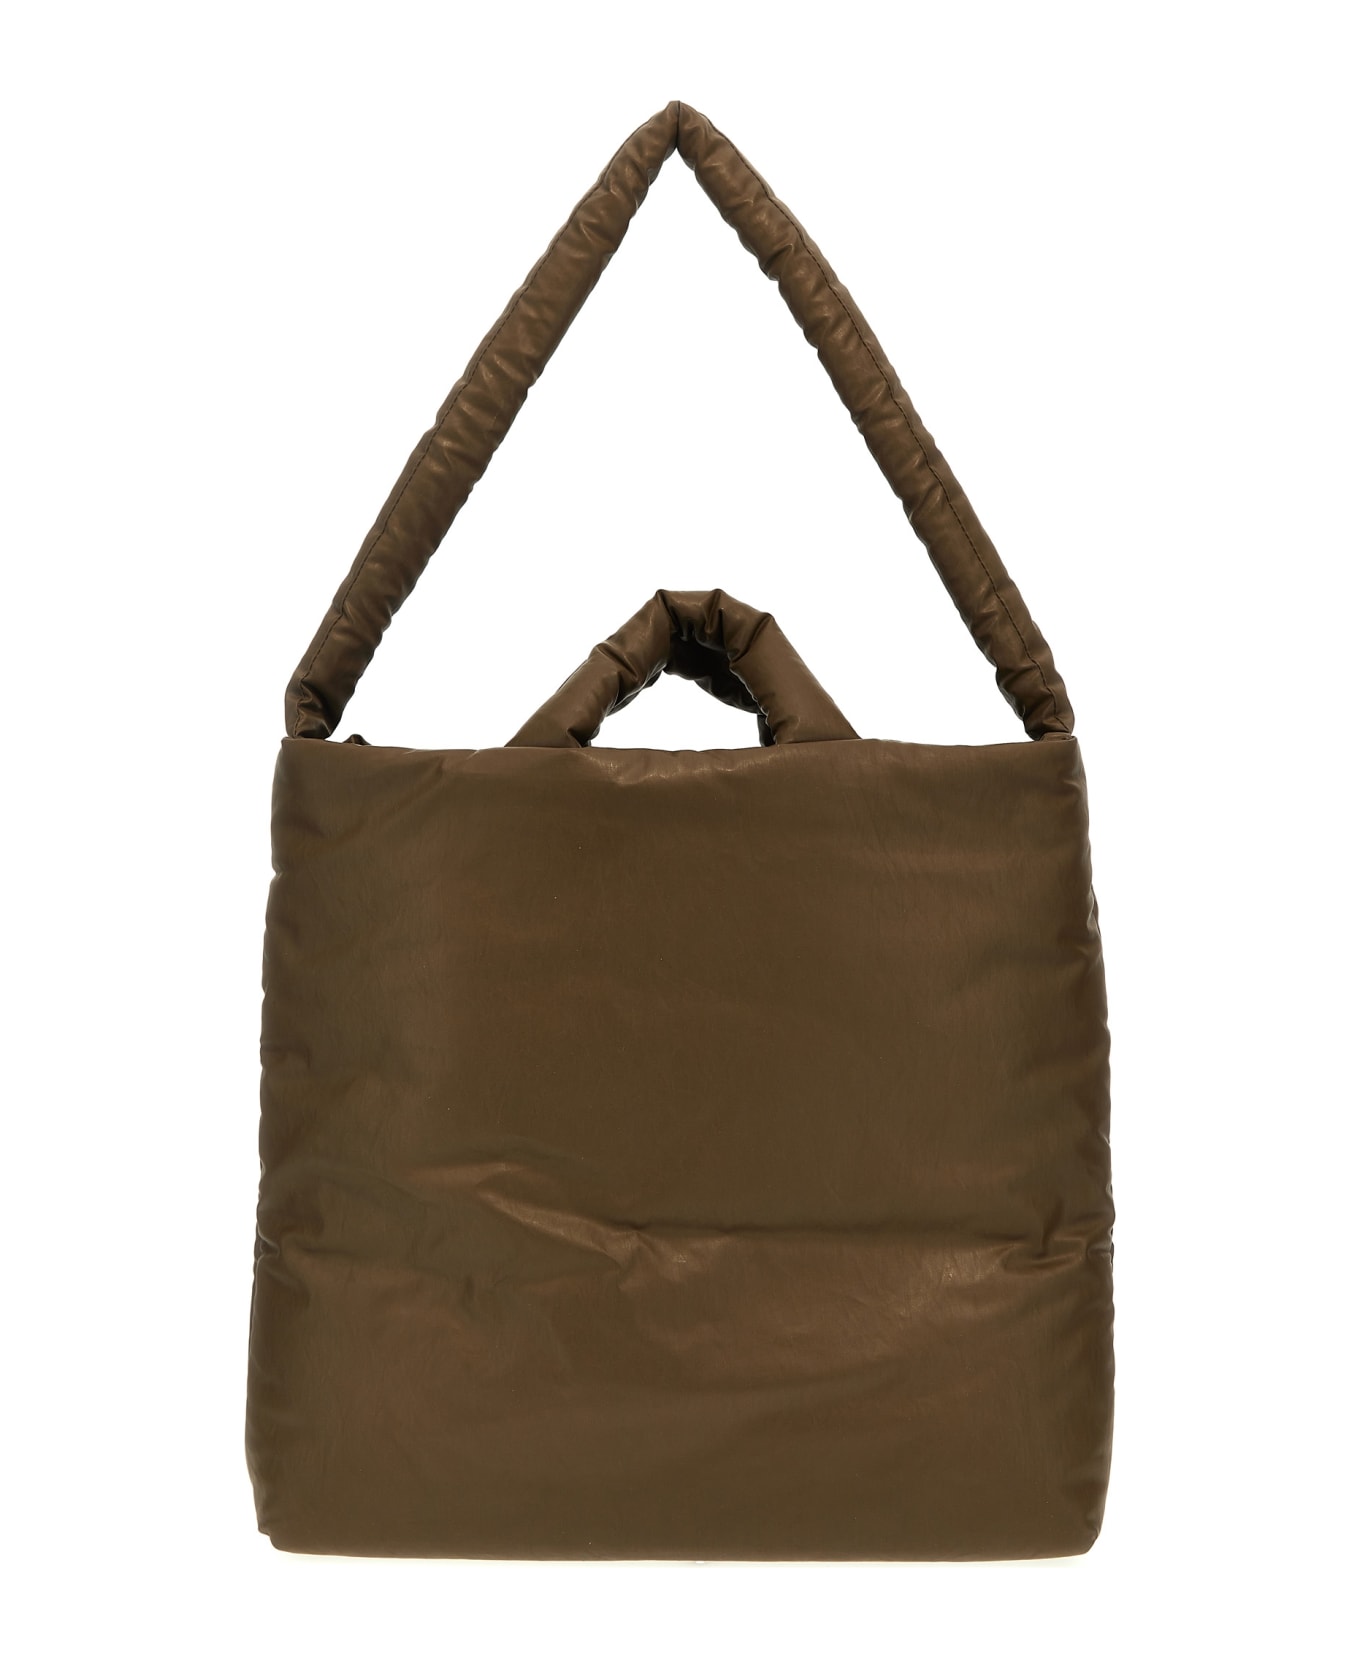 KASSL Editions 'pillow Medium' Shopping Bag - Brown